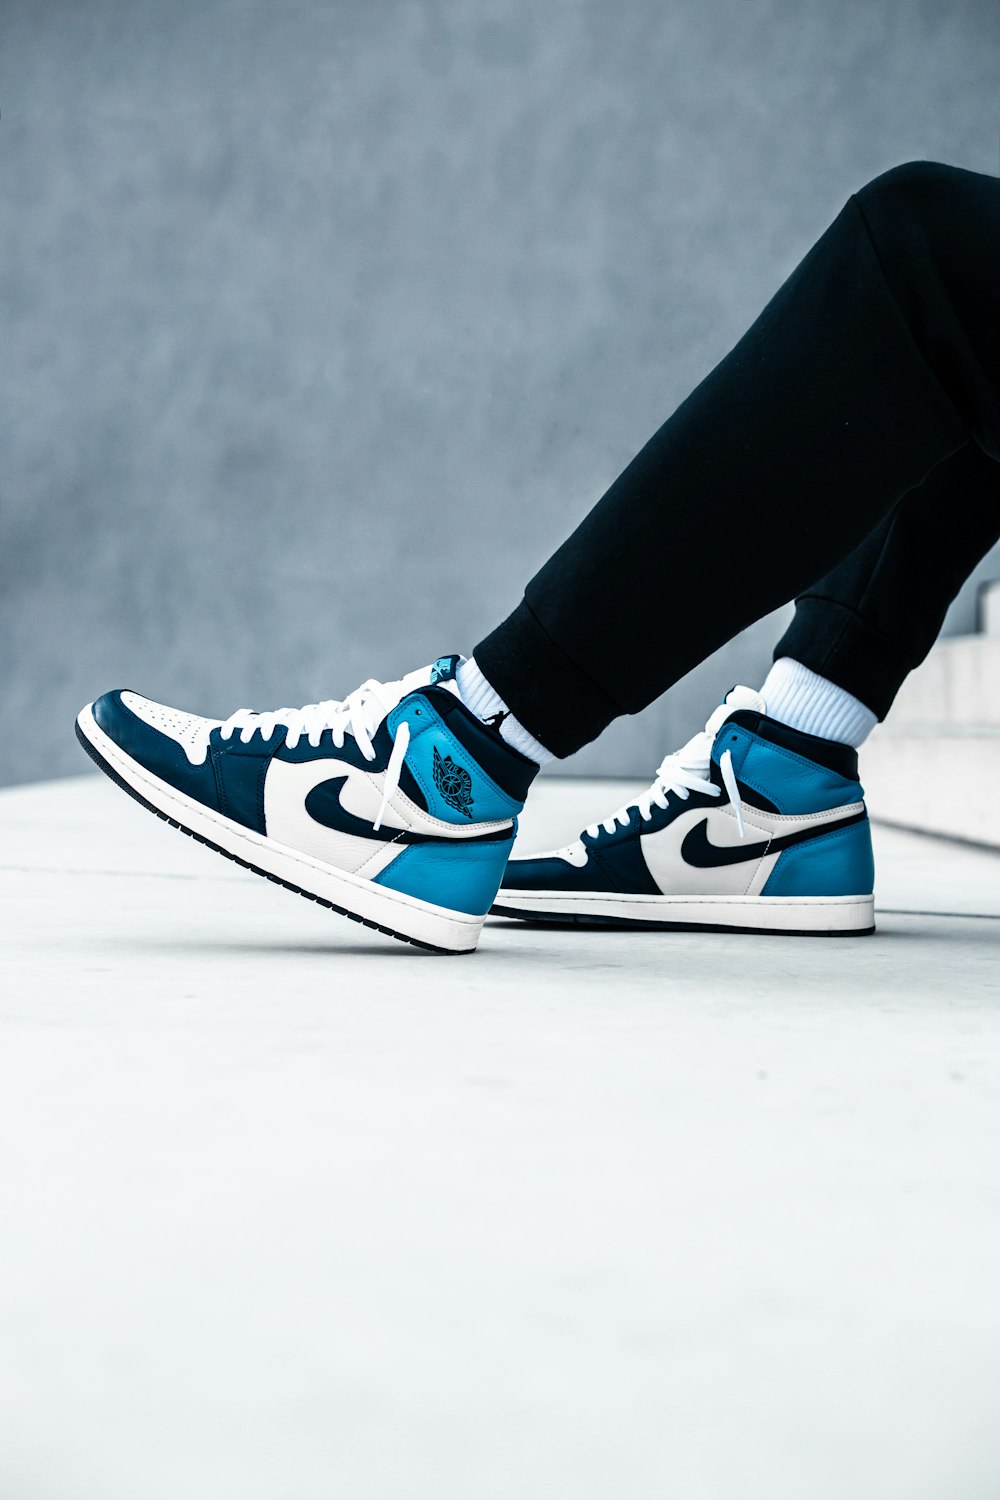 Foto persona con pantalones negros y zapatillas Nike azules y blancas –  Imagen Esloveno gratis en Unsplash